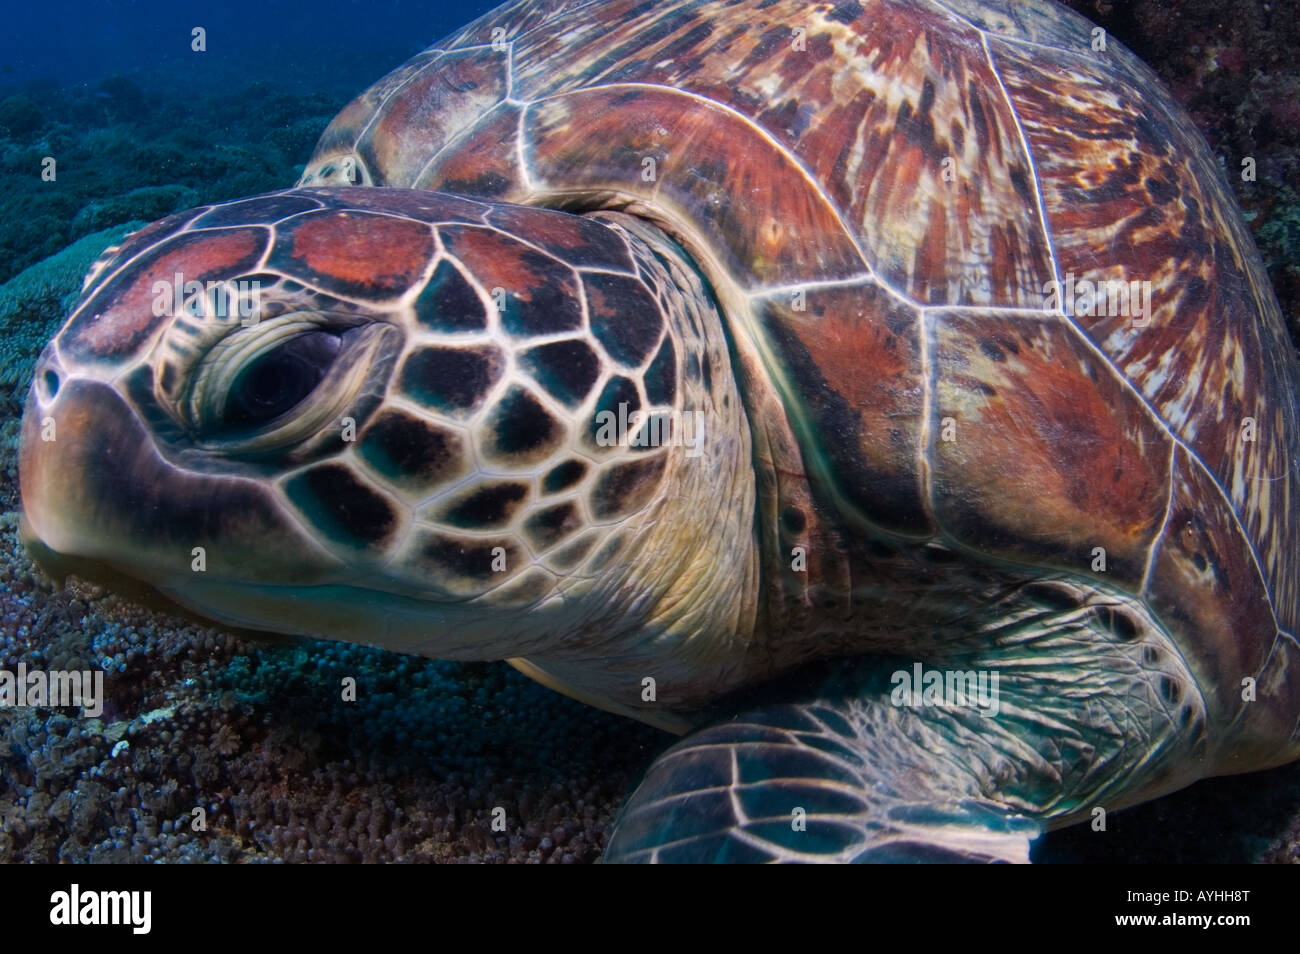 Gros plan tortue verte Chelonia mydas Gili Trawangan Lombok Indonésie Océan Pacifique En voie de disparition Banque D'Images